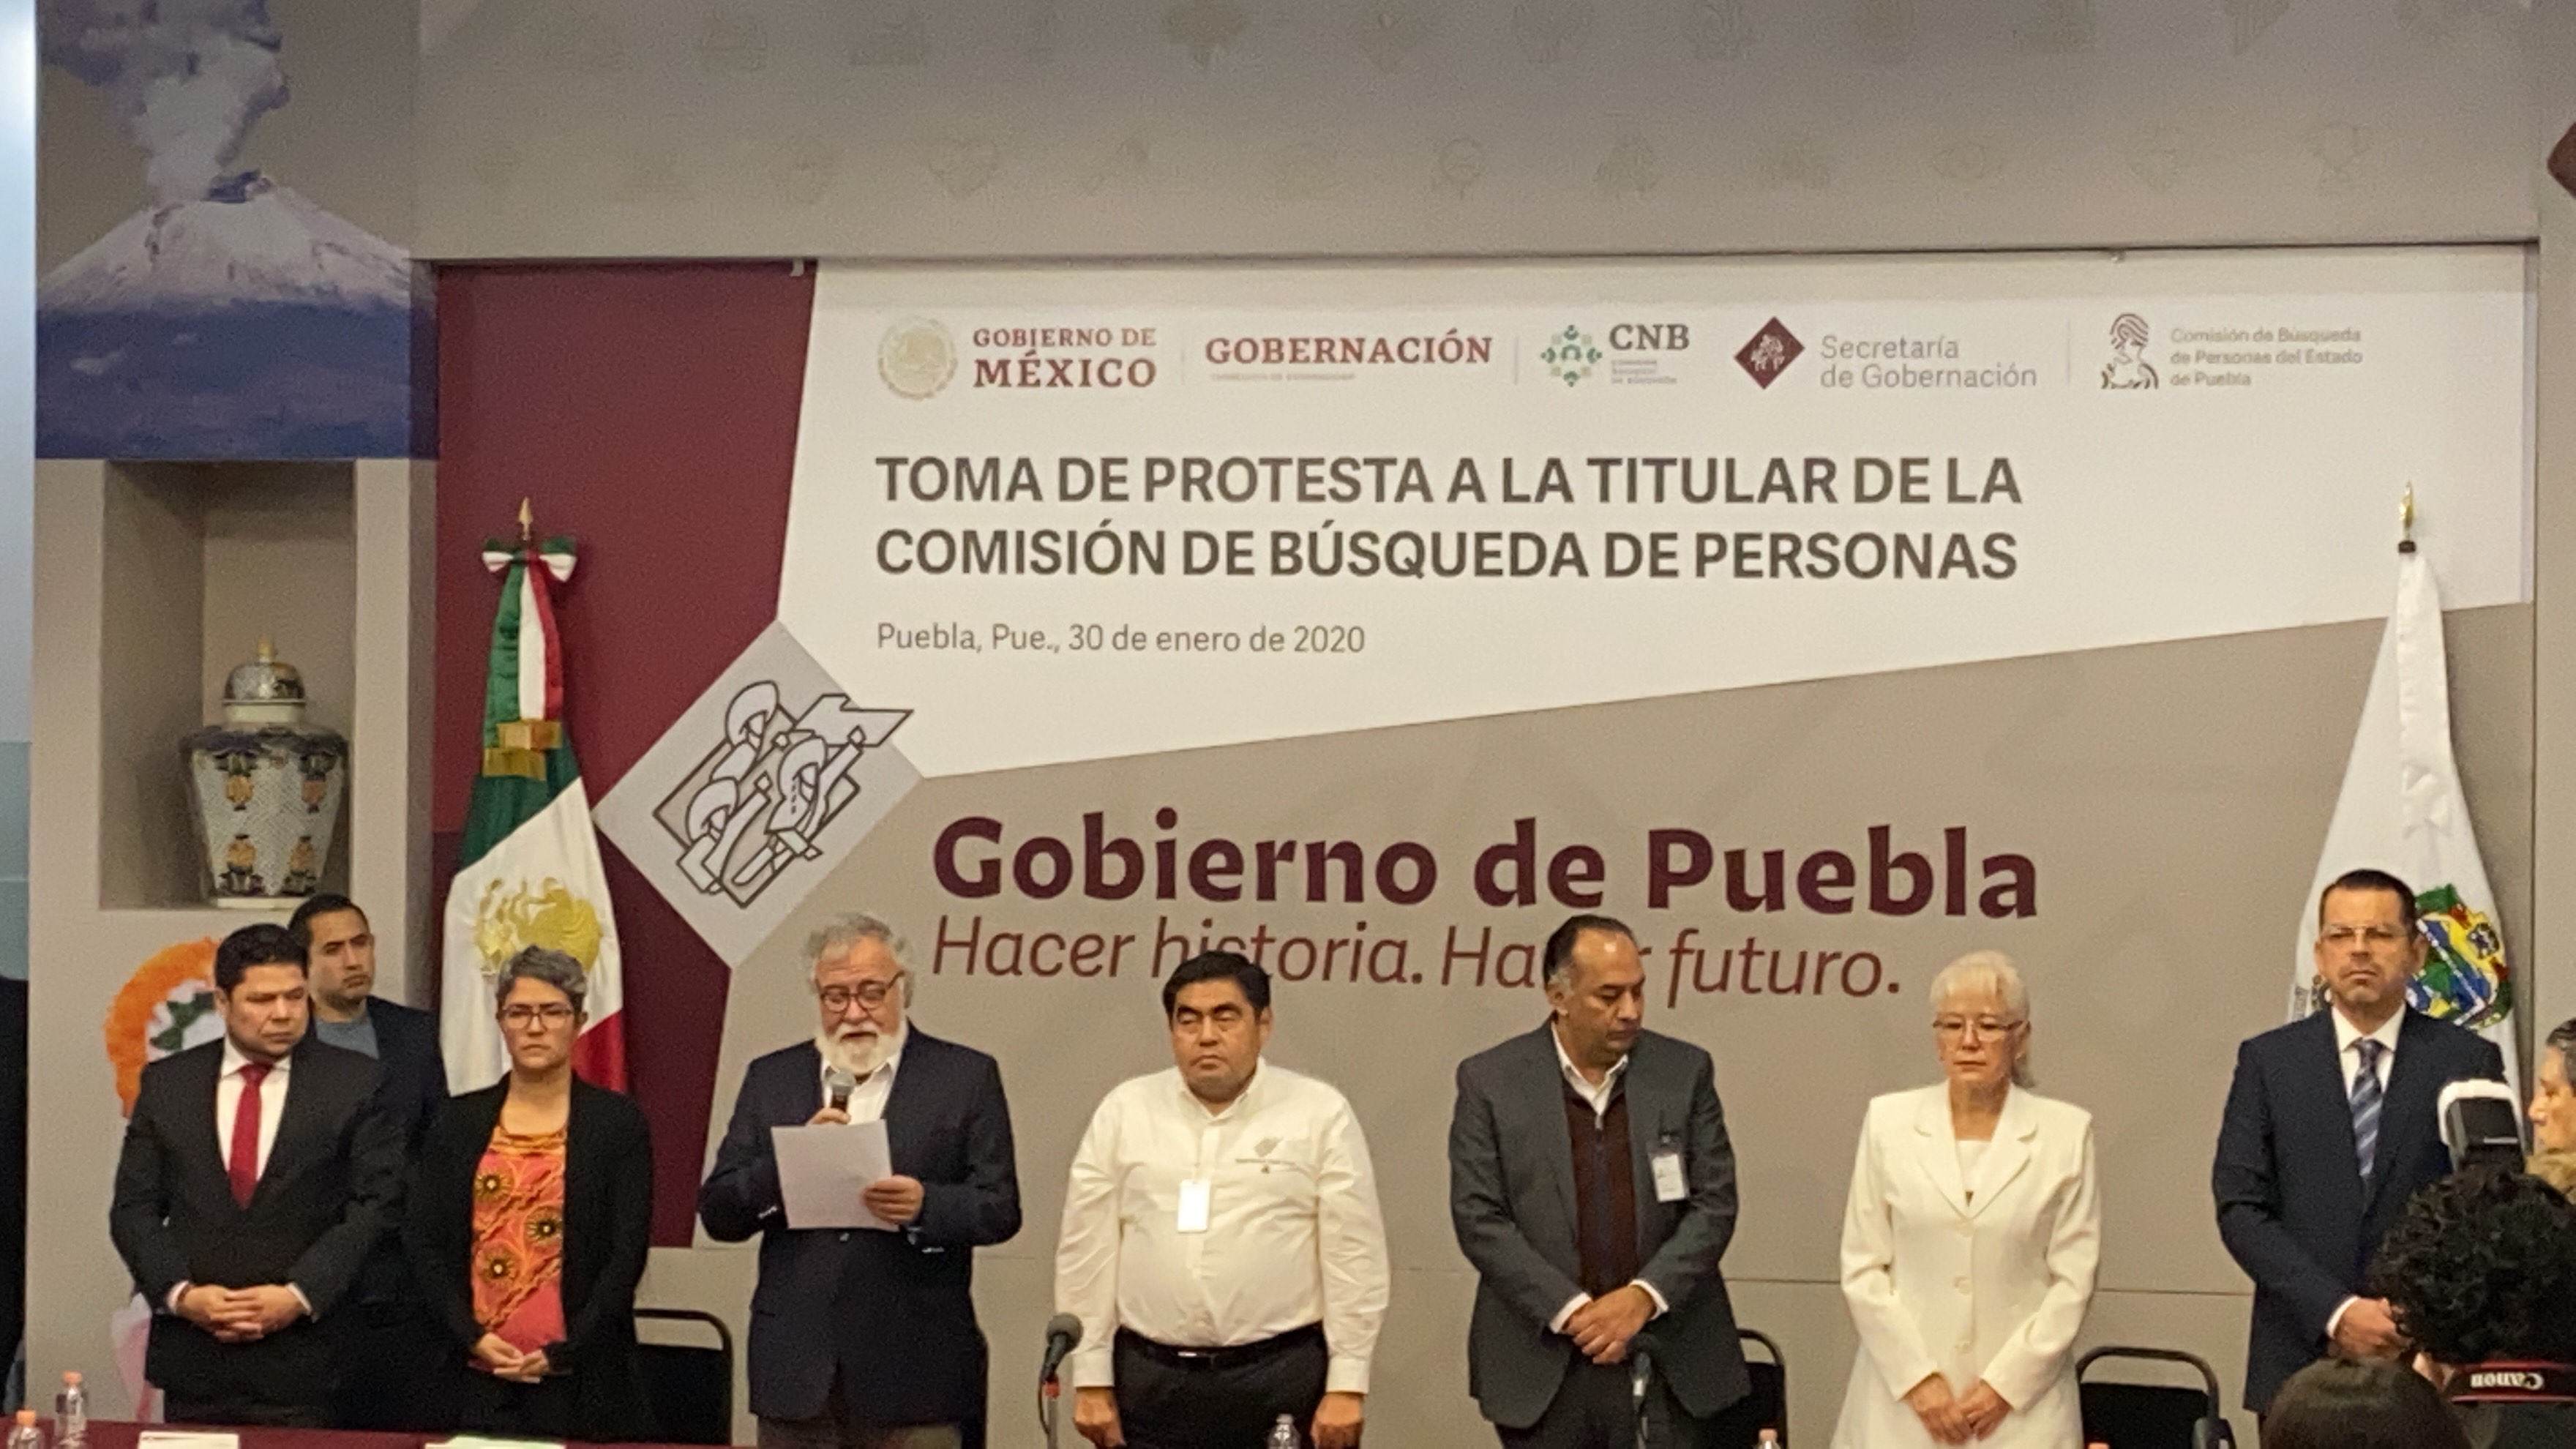 Casi tres mil personas en Puebla, desaparecidas: Gobernación federal